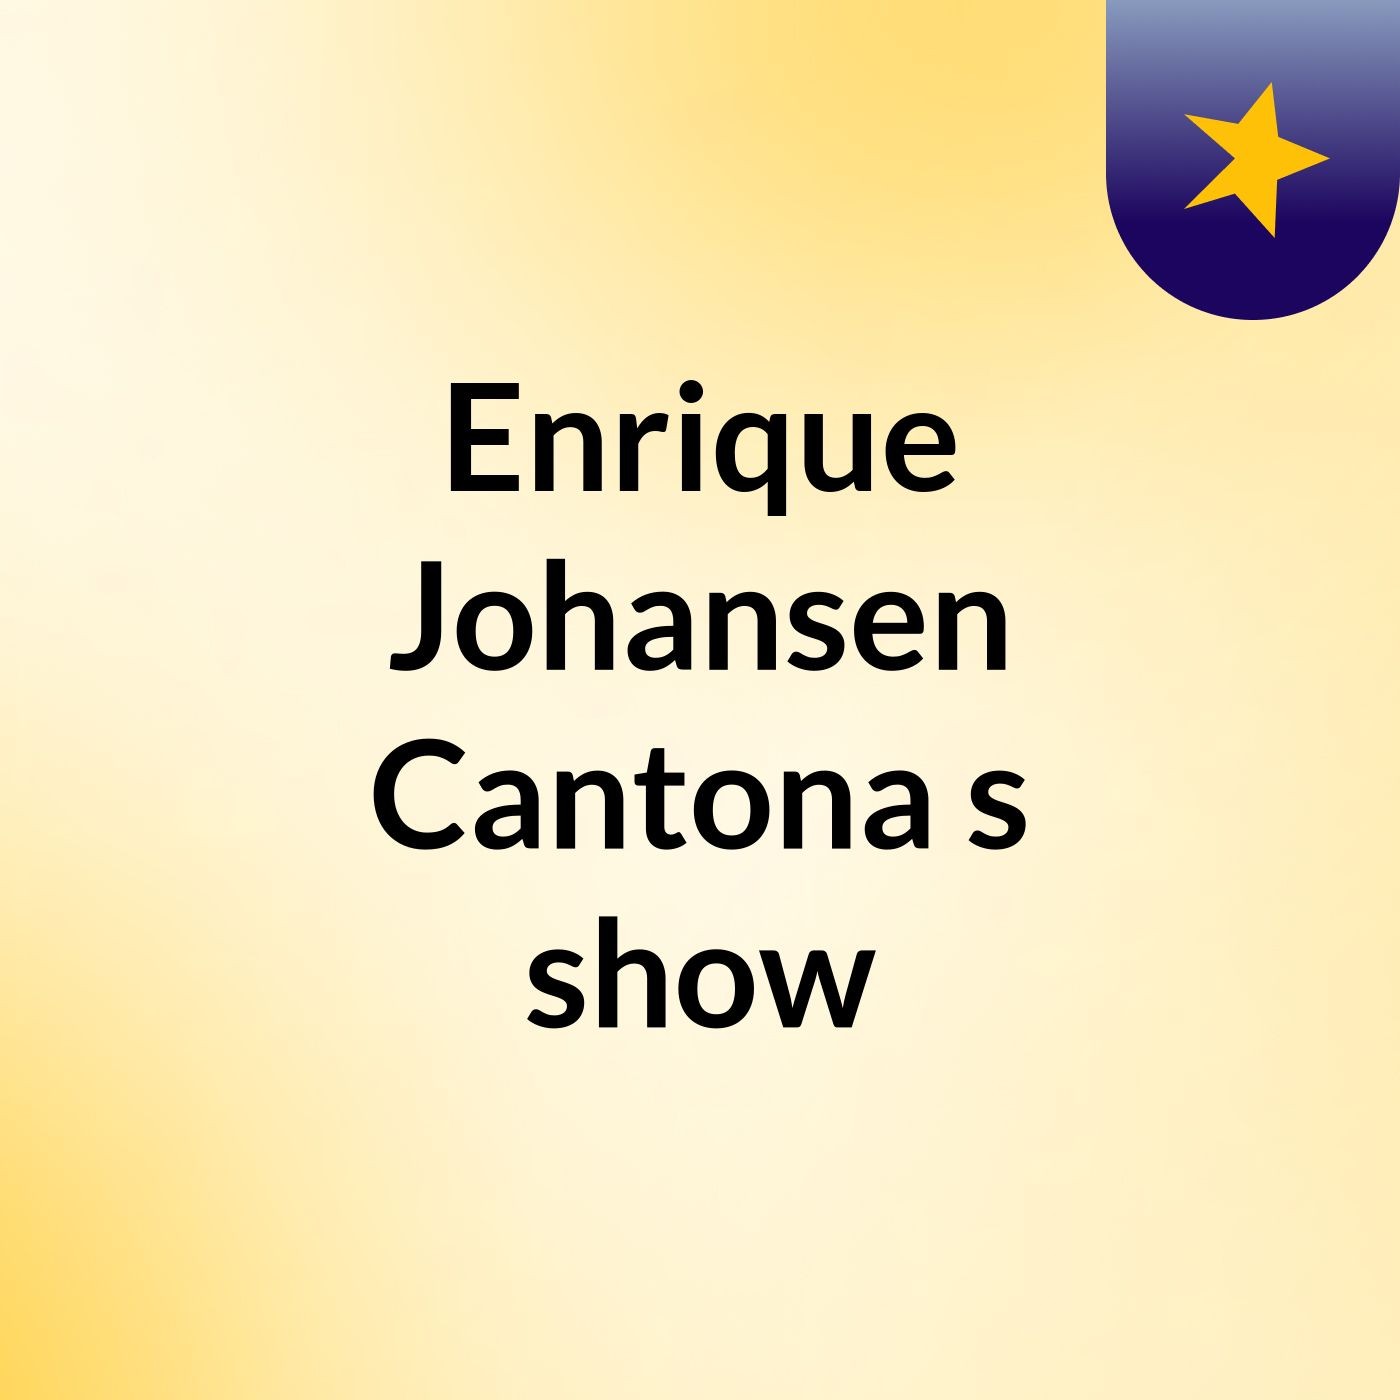 Enrique Johansen Cantona's show